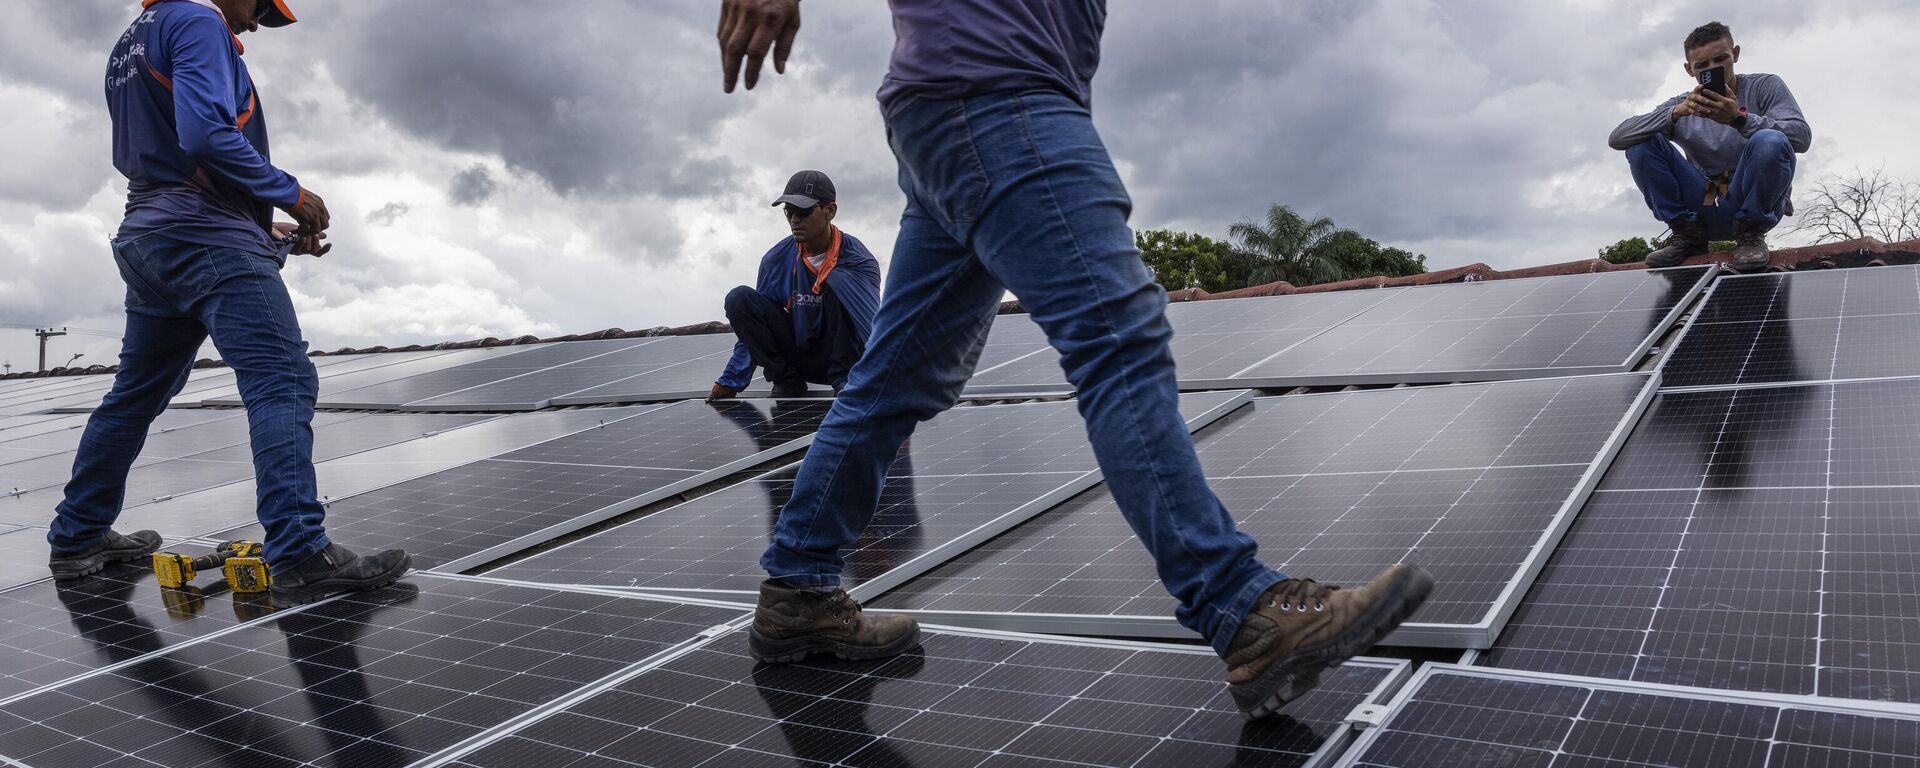 Operários instalam painéis solares fotovoltaicos no telhado de motel em Boa Vista (RR), em 28 de setembro de 2022 - Sputnik Brasil, 1920, 30.11.2022